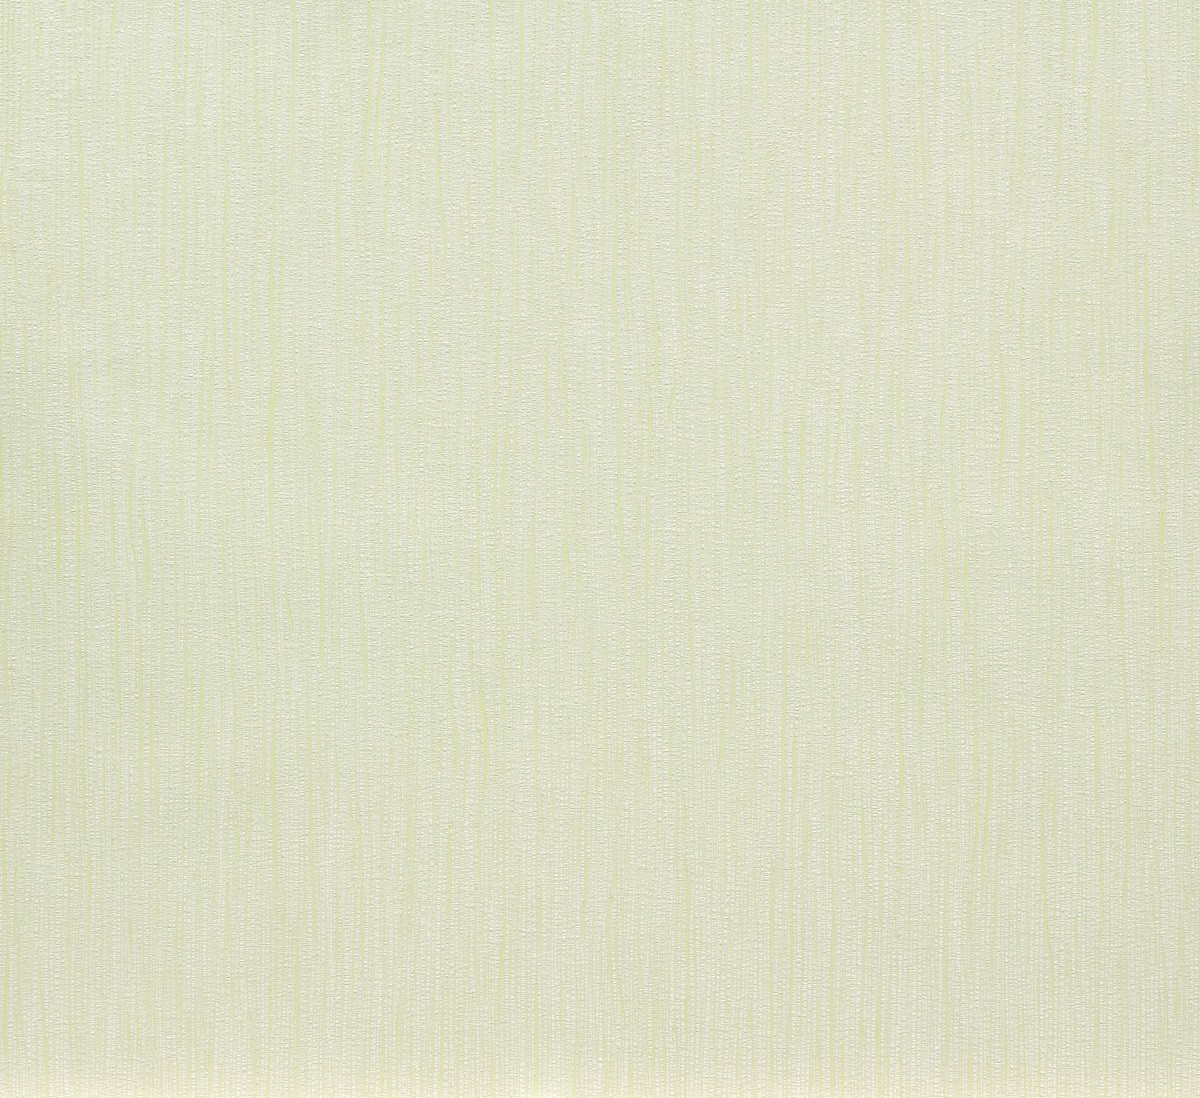 Strich Vliestapete weiß Design blassgrün 56526 Marburg